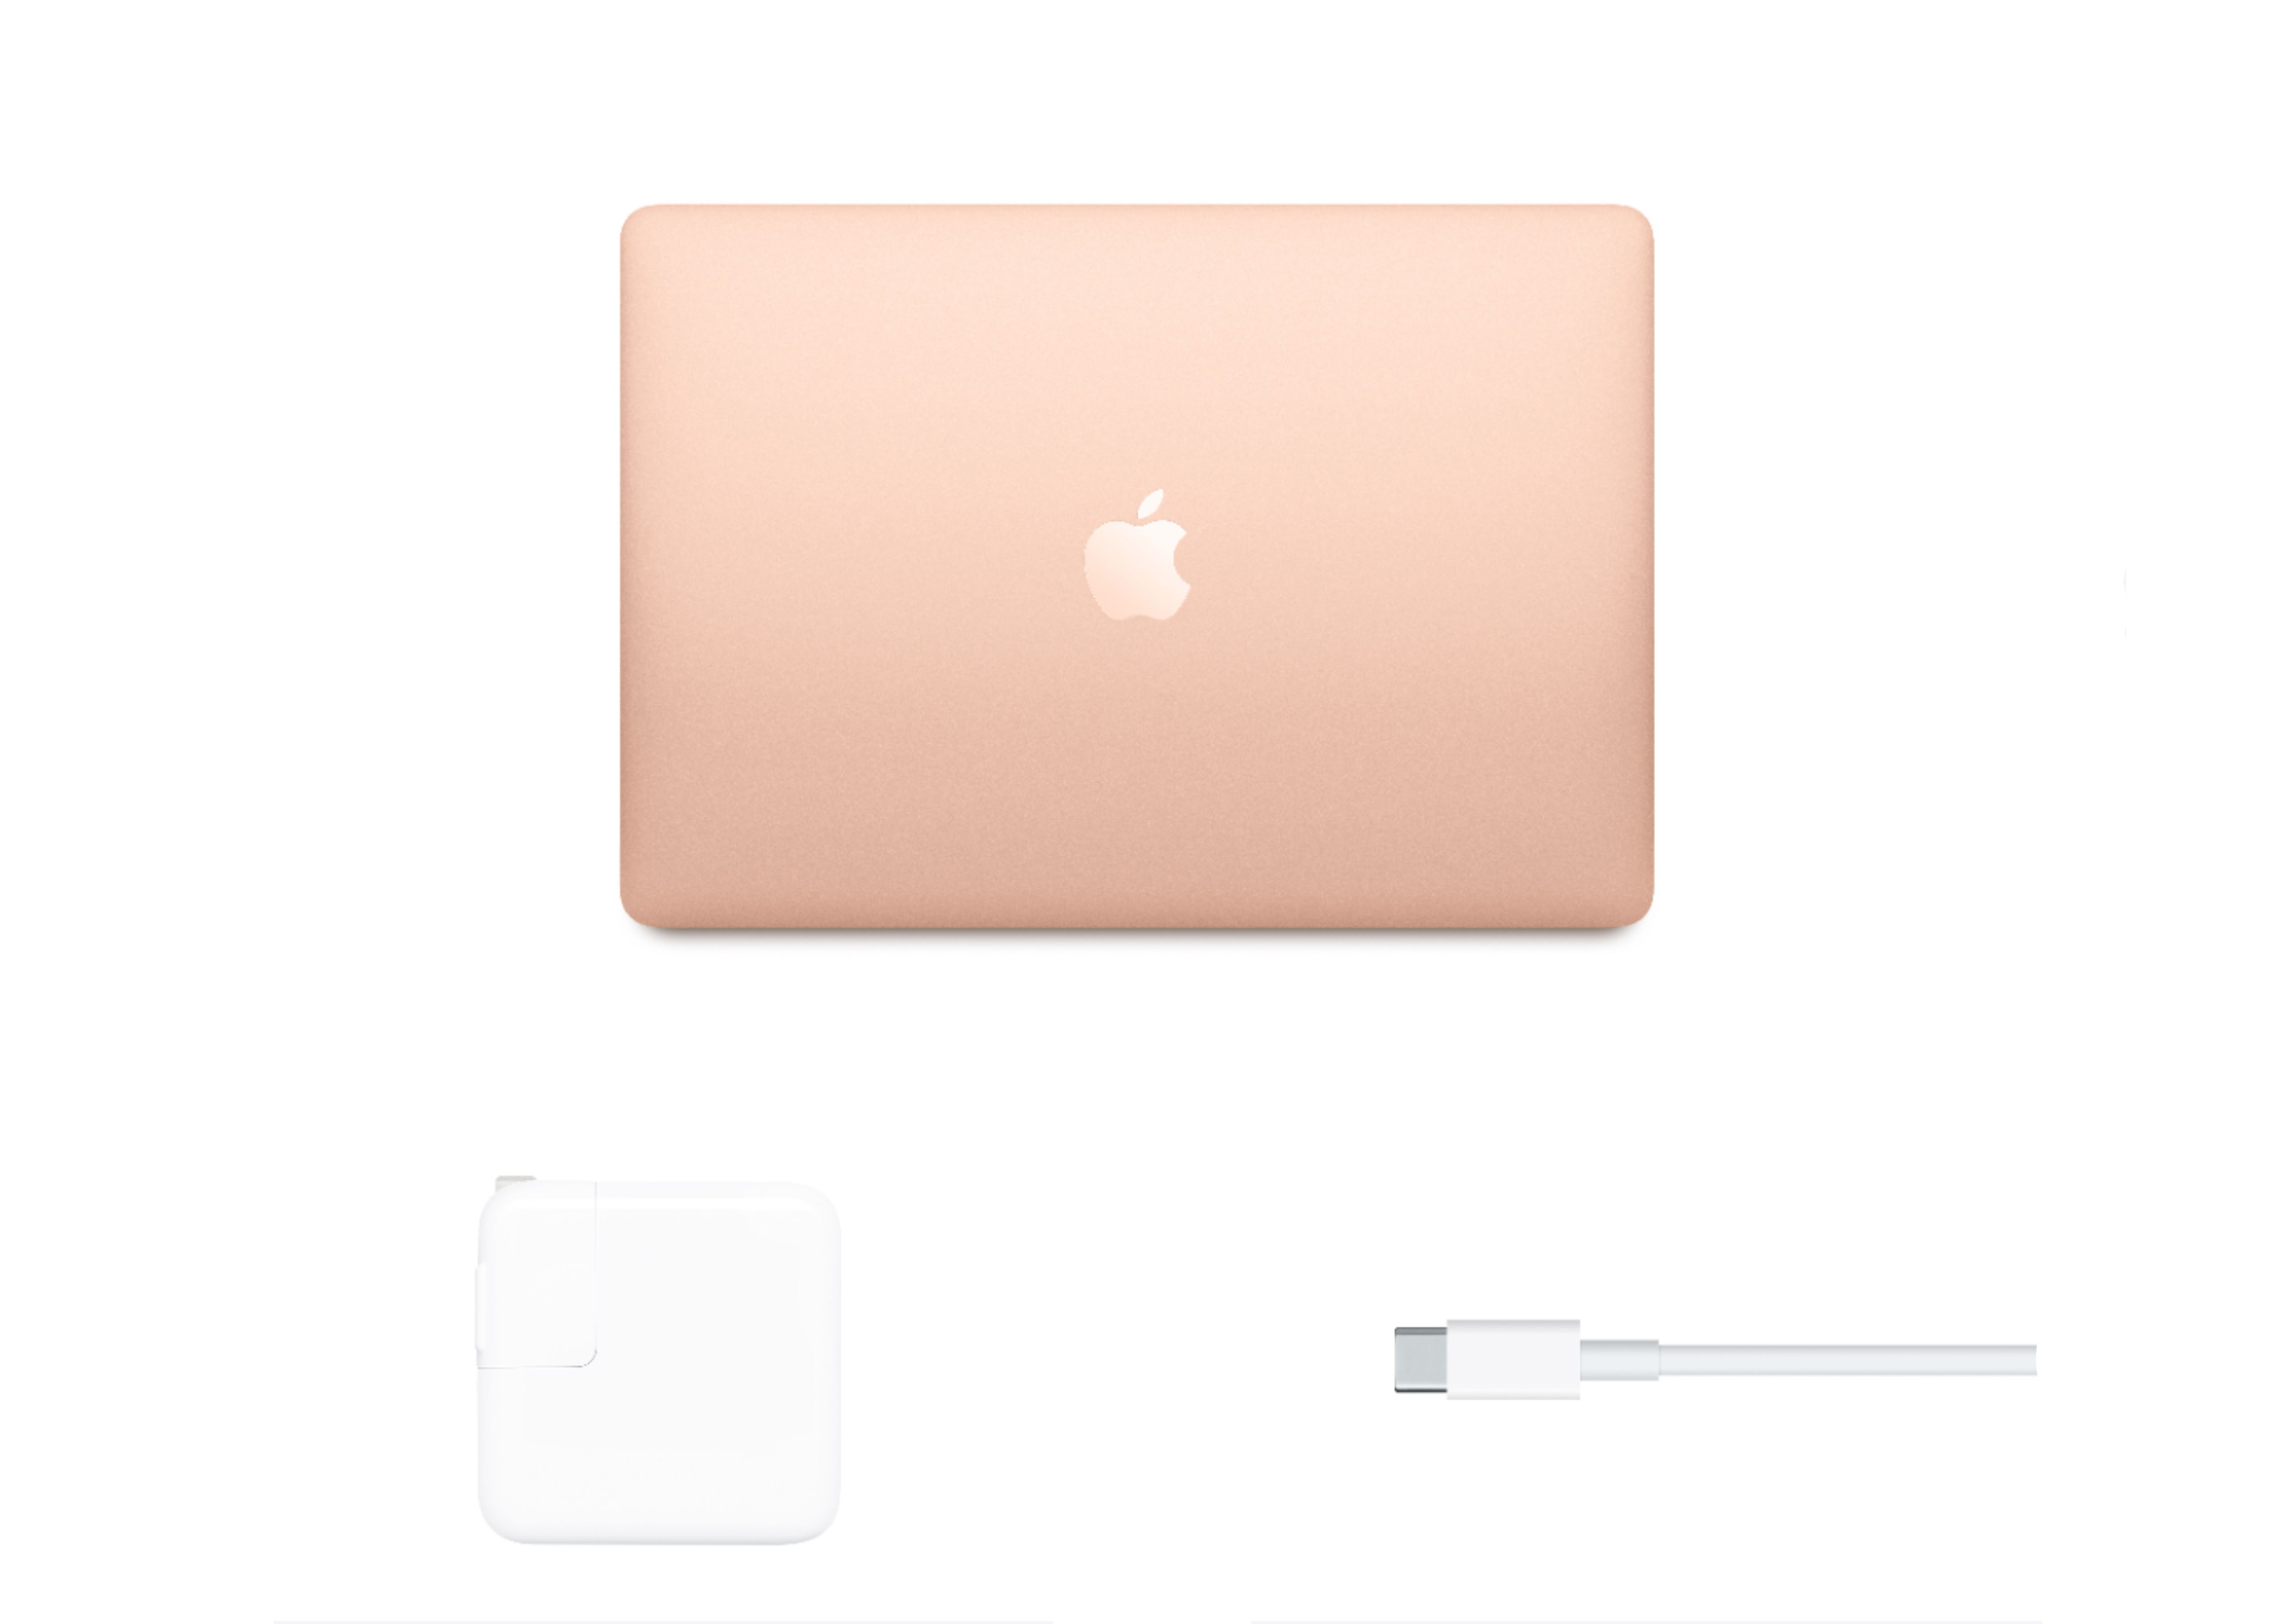 Apple Macbook Air 13 Inch M1 Chip 8GB RAM 256GB SSD Mac OS u200eMGND3LL/A Gold  - US